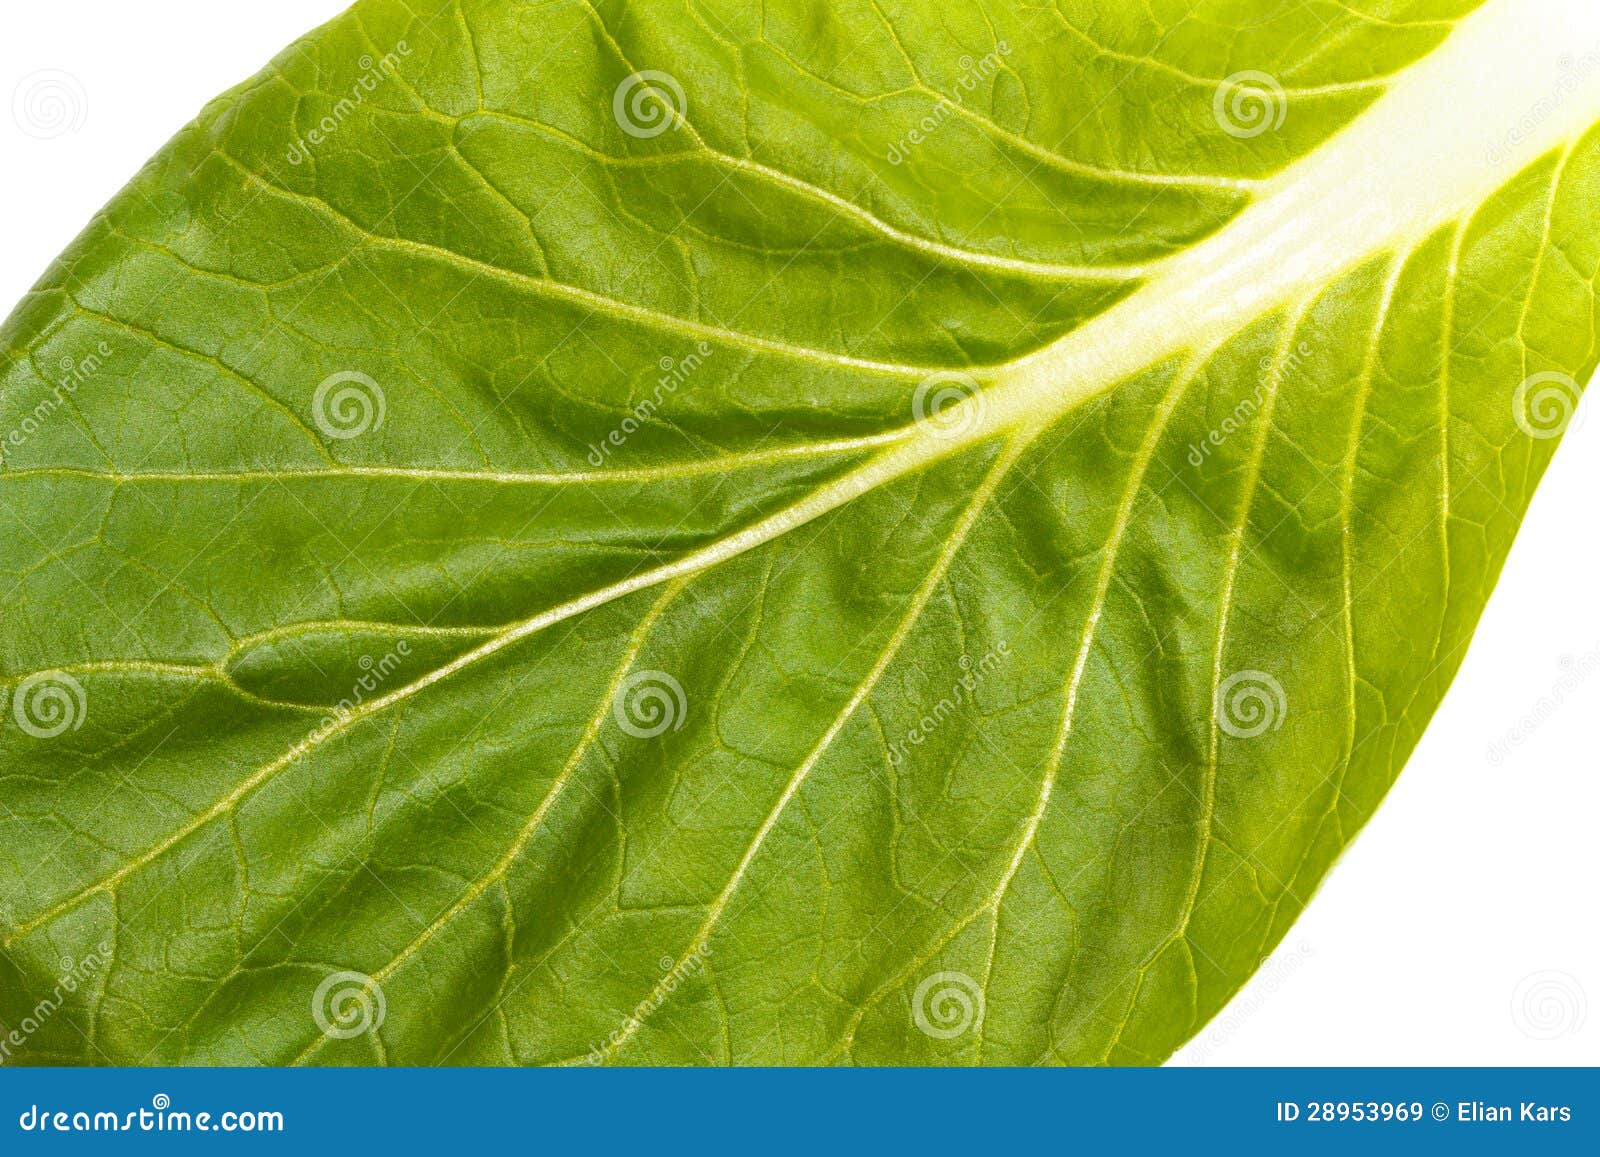 close up of pak choi (brassica rapa) leaf